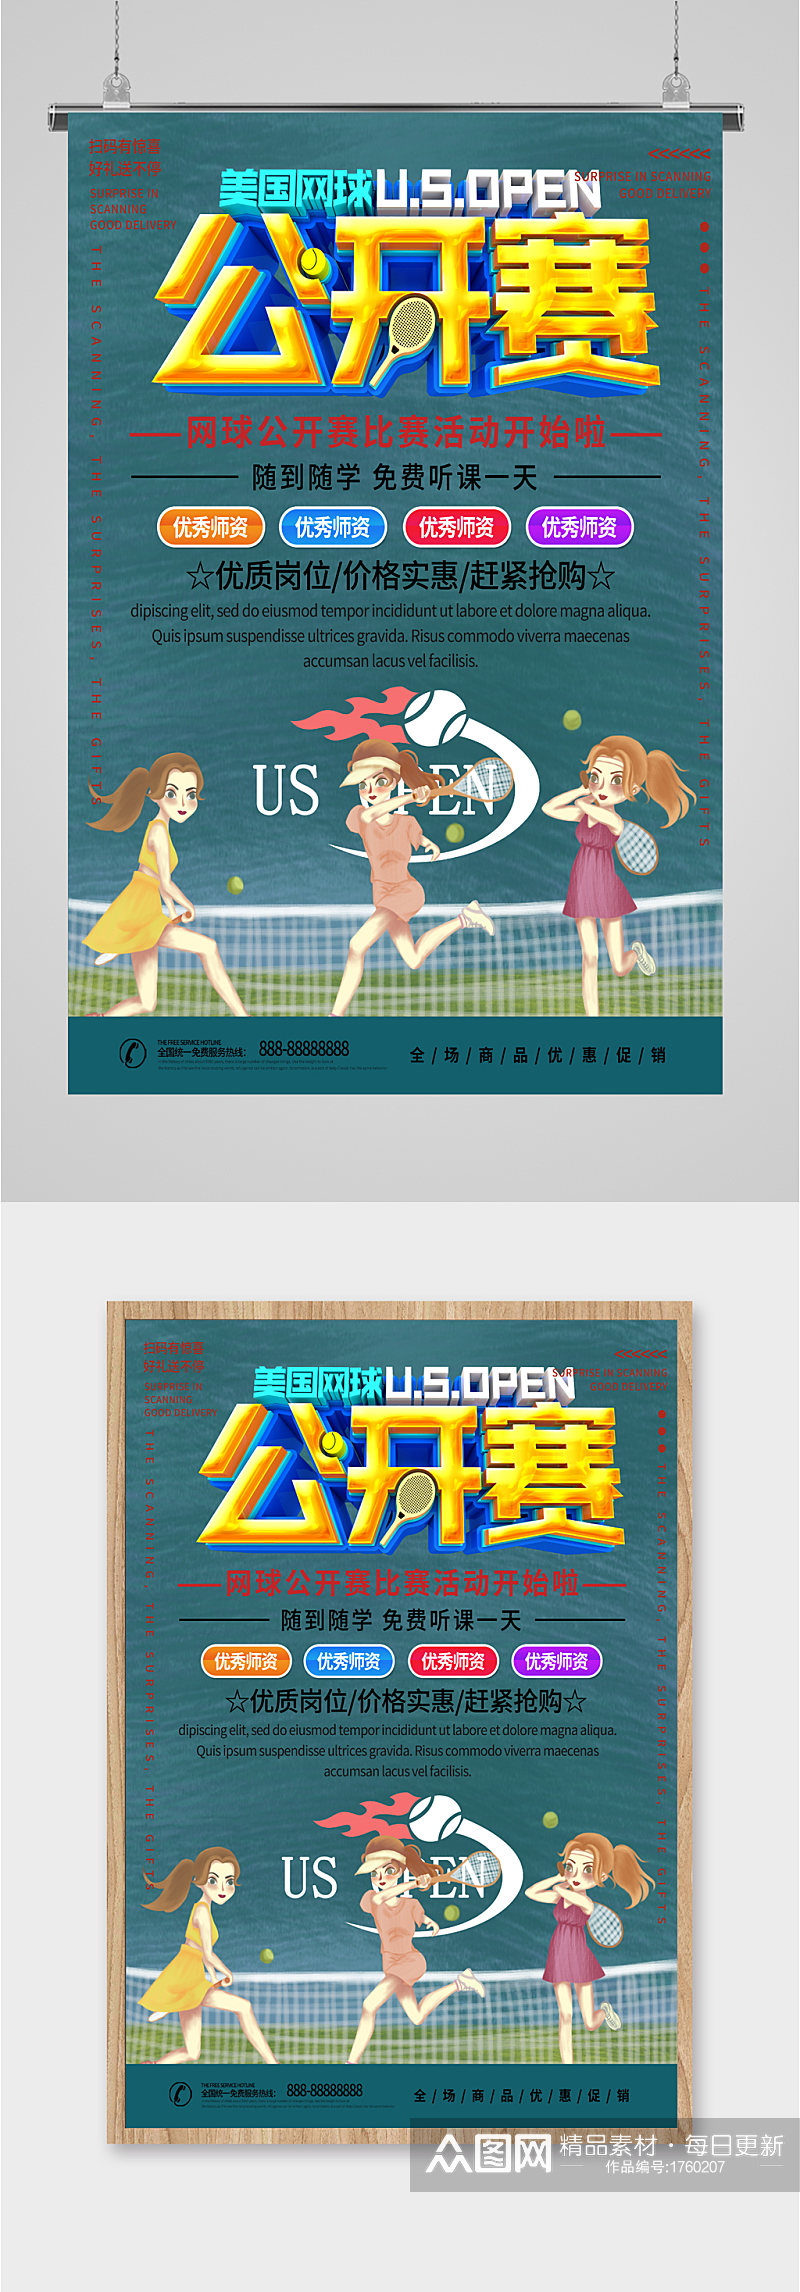 网球公开赛比赛活动海报素材